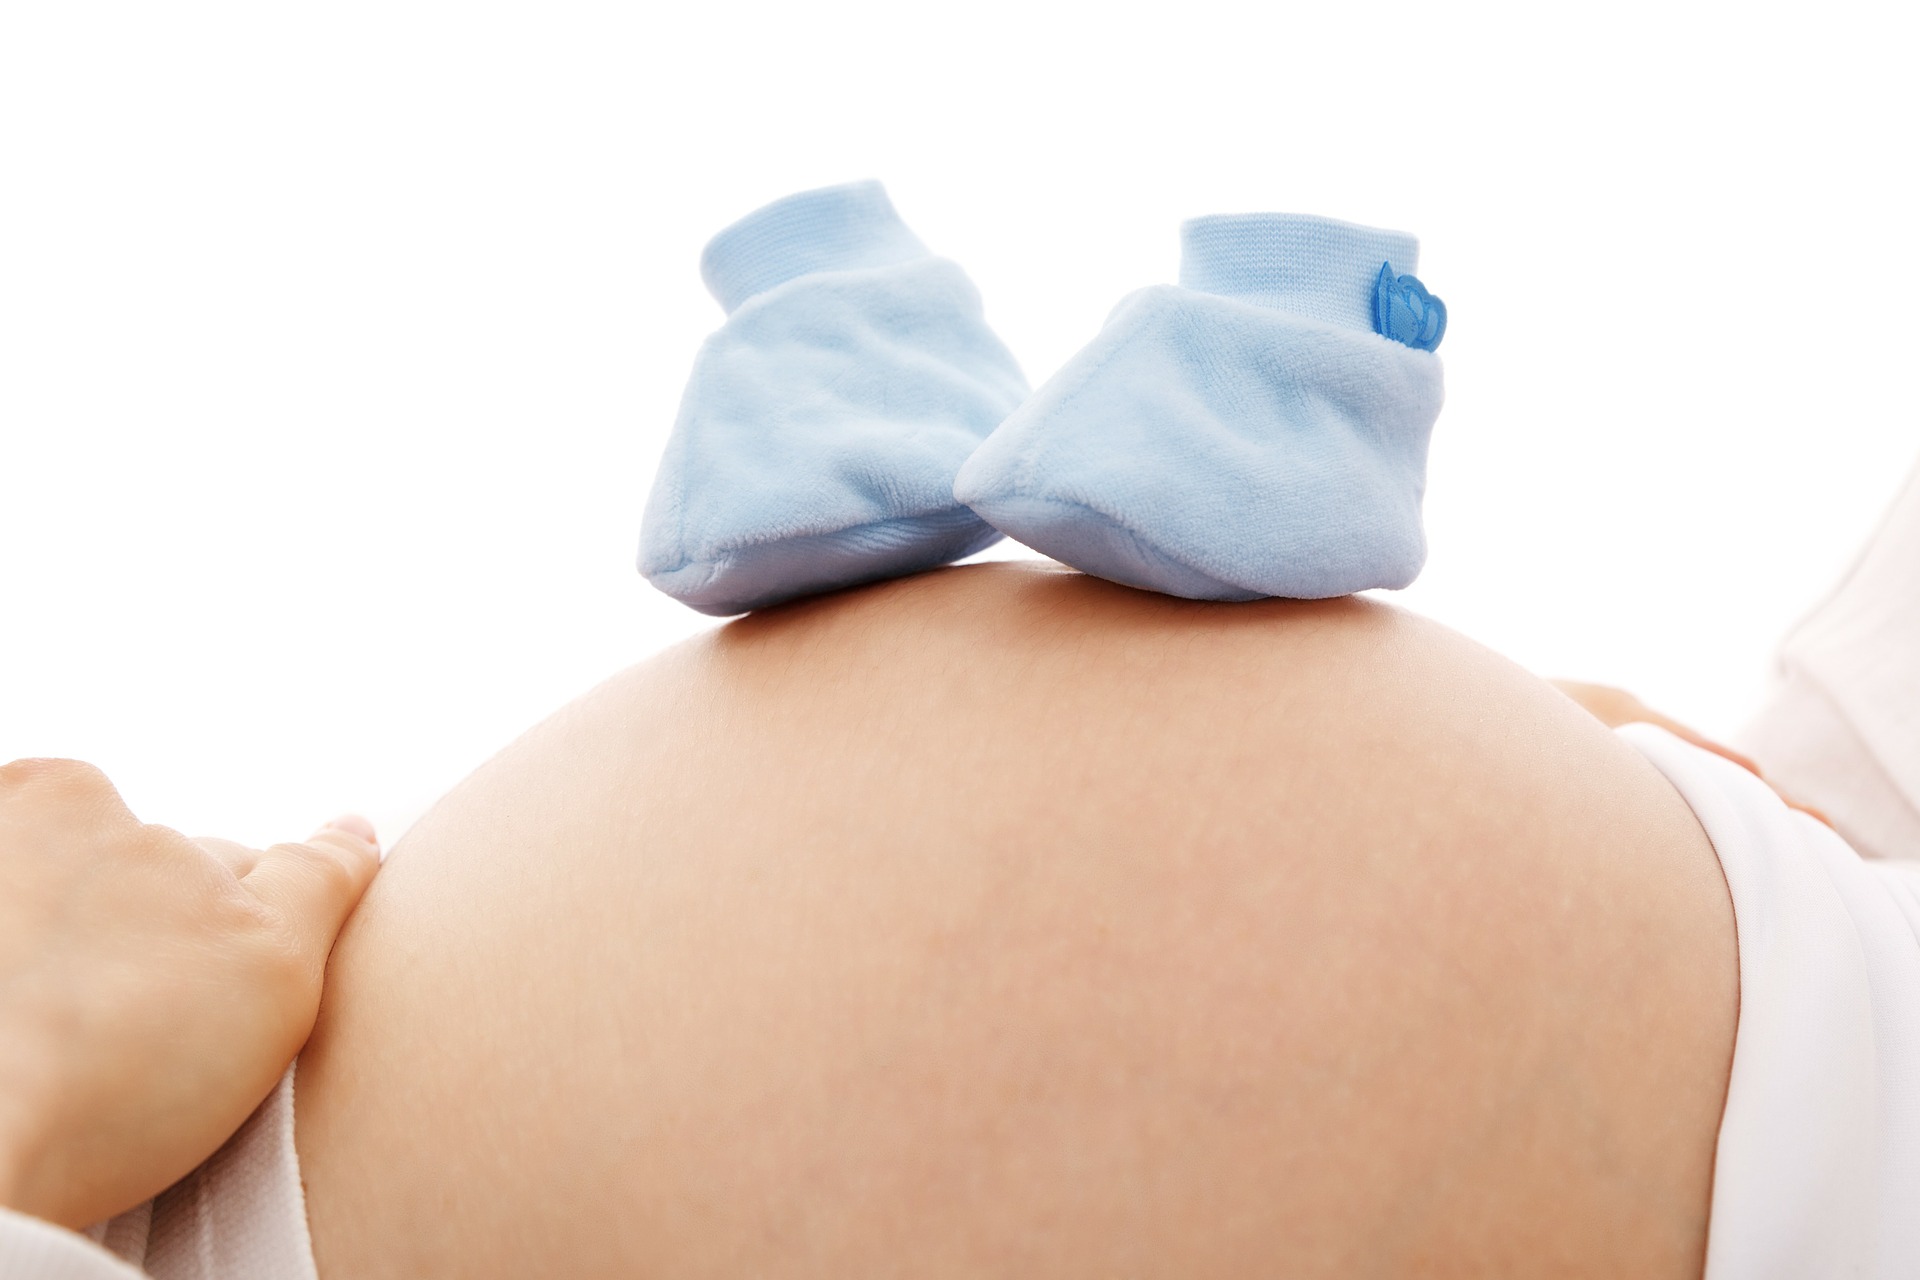 臨月に胎動が少ないと危険 臨月の胎動が減る原因と対策をわかりやすく解説 ベビーテクニック